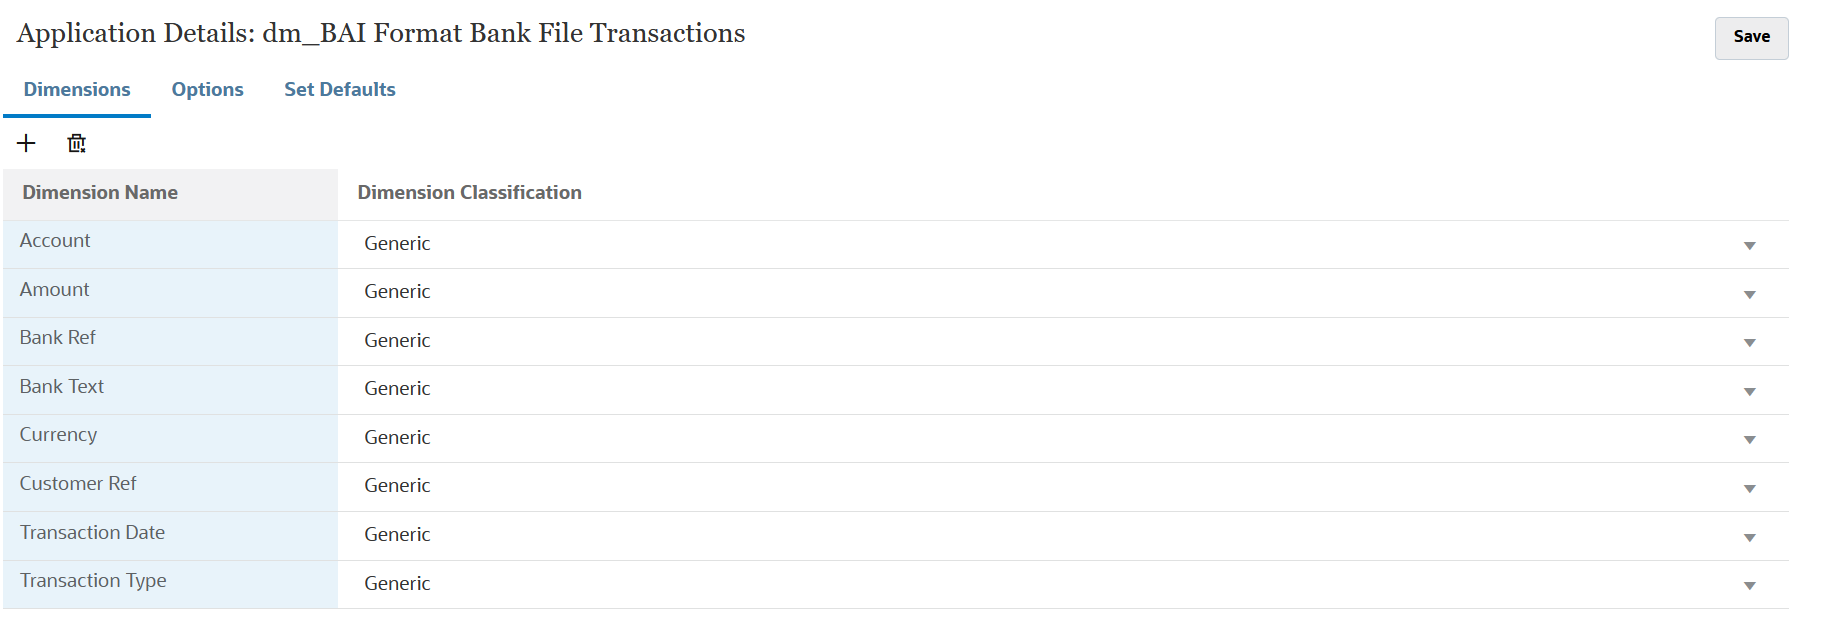 BAI 형식 은행 파일 트랜잭션에 대한 차원 세부정보가 표시된 이미지